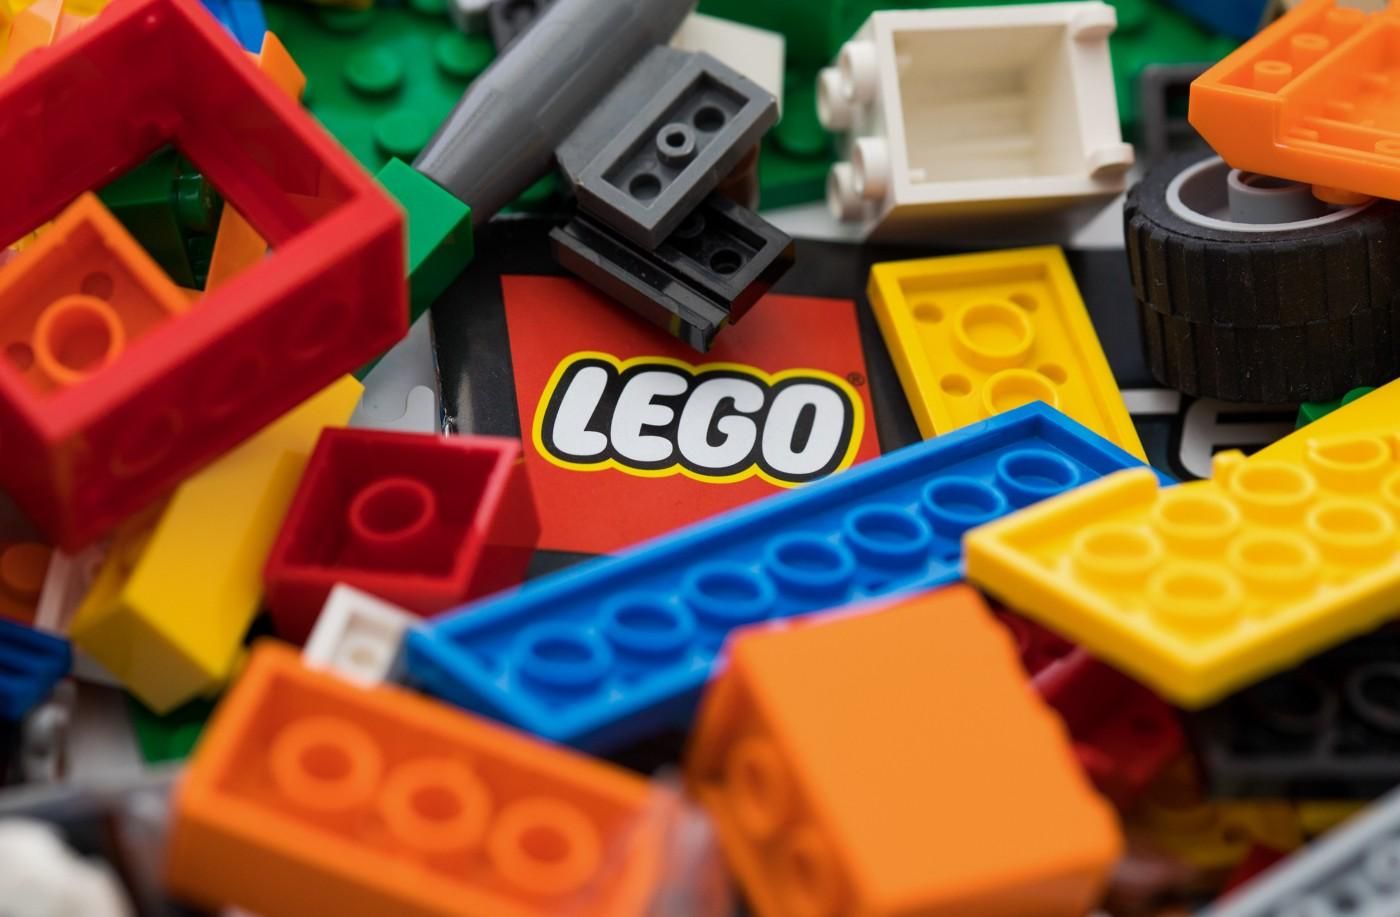 Lego приостановила поставки своей продукции в Россию - Бизнес